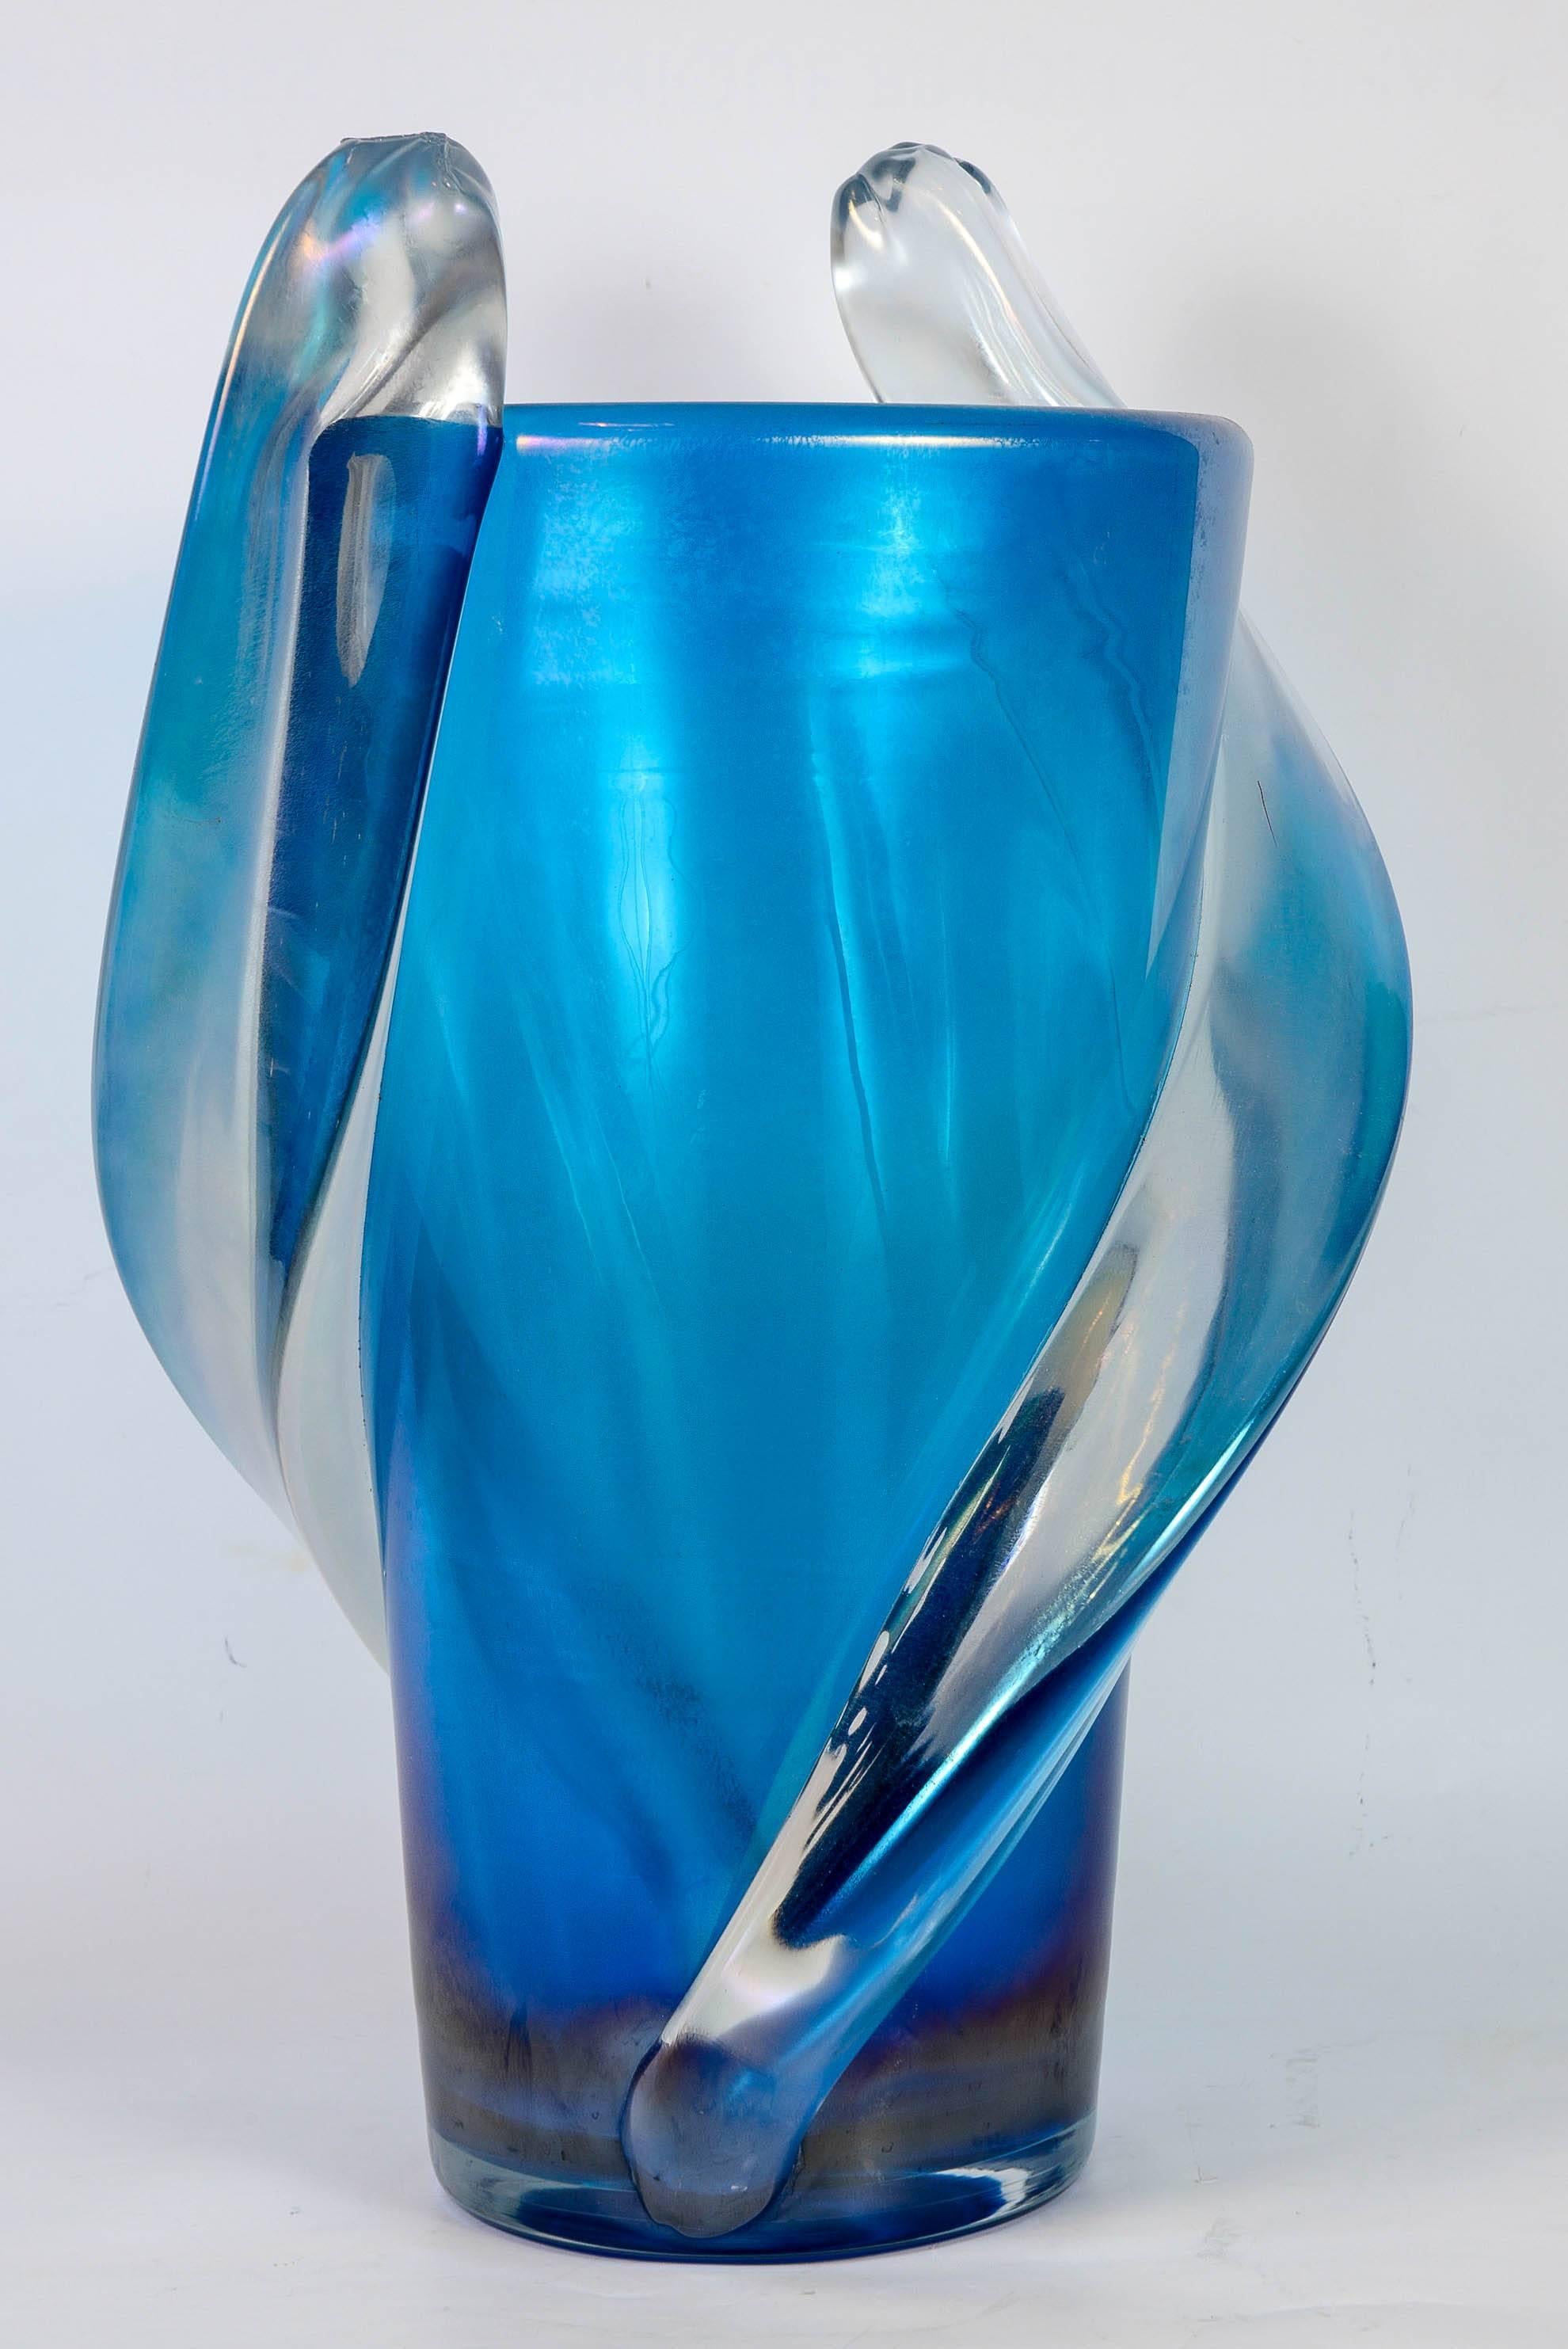 Italian Vase in Murano Glass